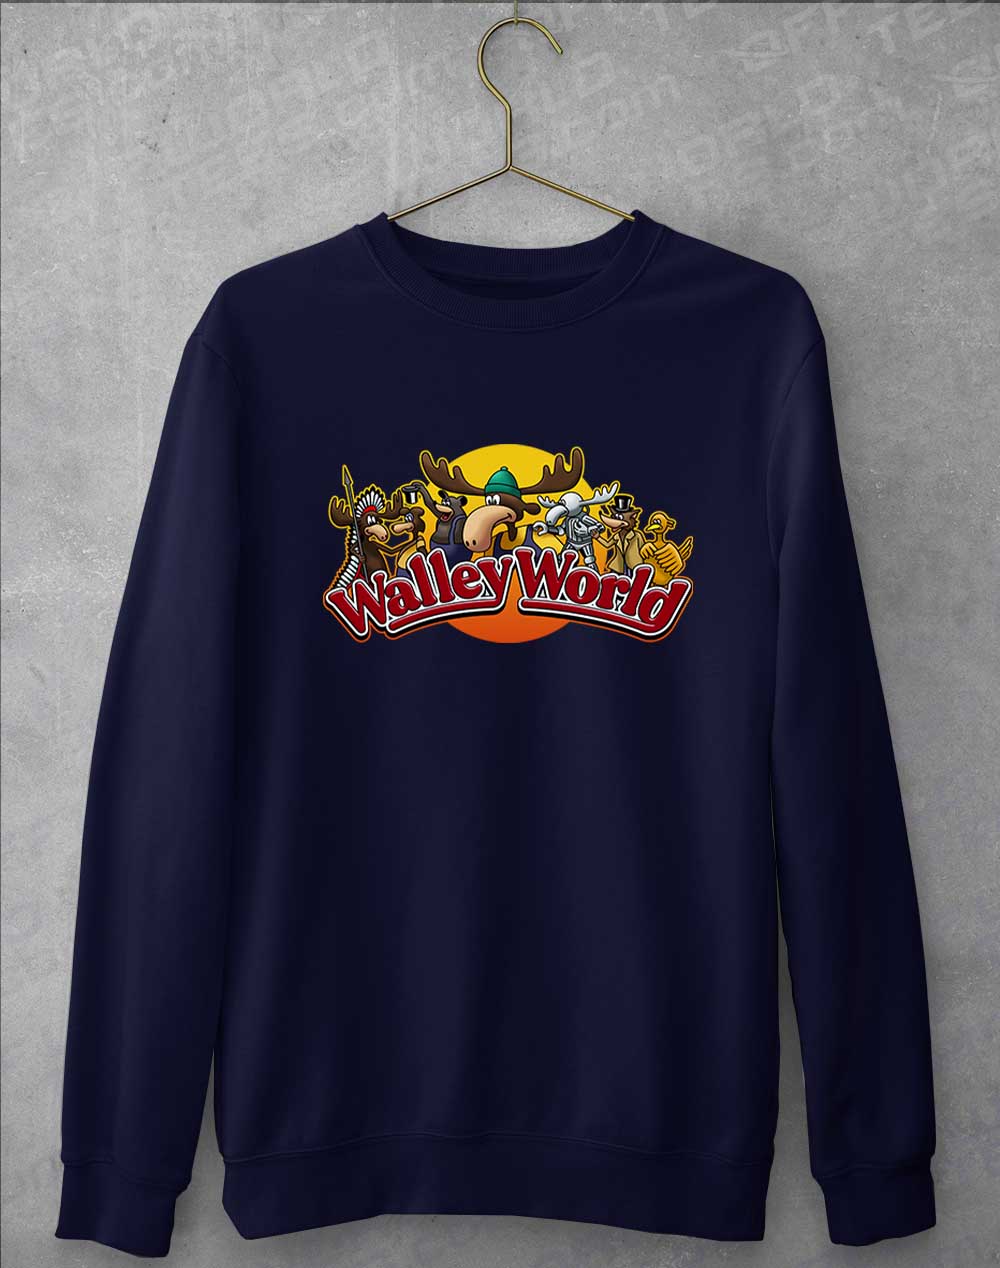 Oxford Navy - Walley World Sweatshirt